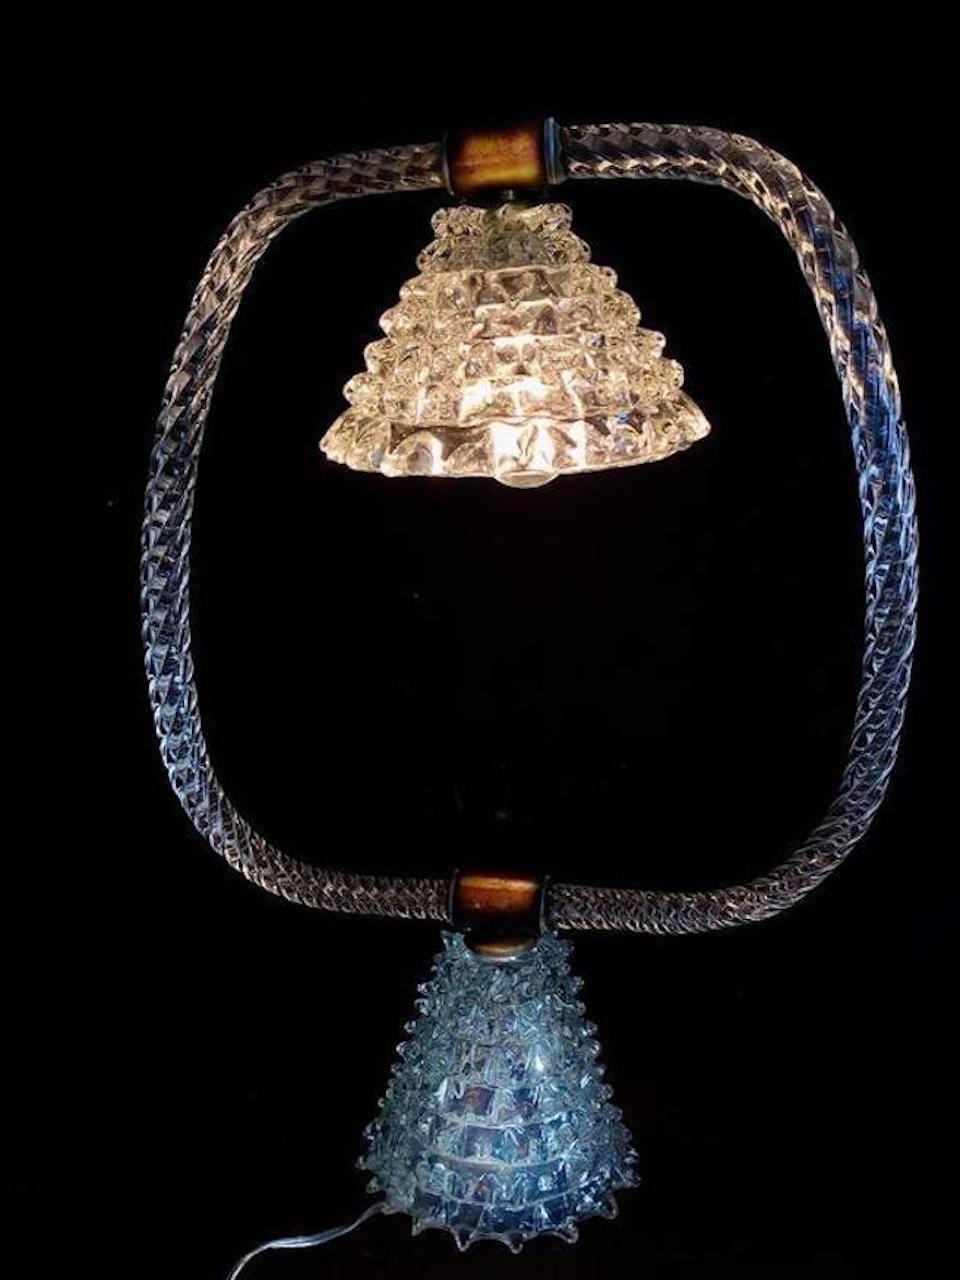 Belle lampe de table par Ercole Barovier. Fabriqué avec le légendaire verre rostrato, c'est une pièce d'une valeur rare.
De la collection privée de Von Plant.
 